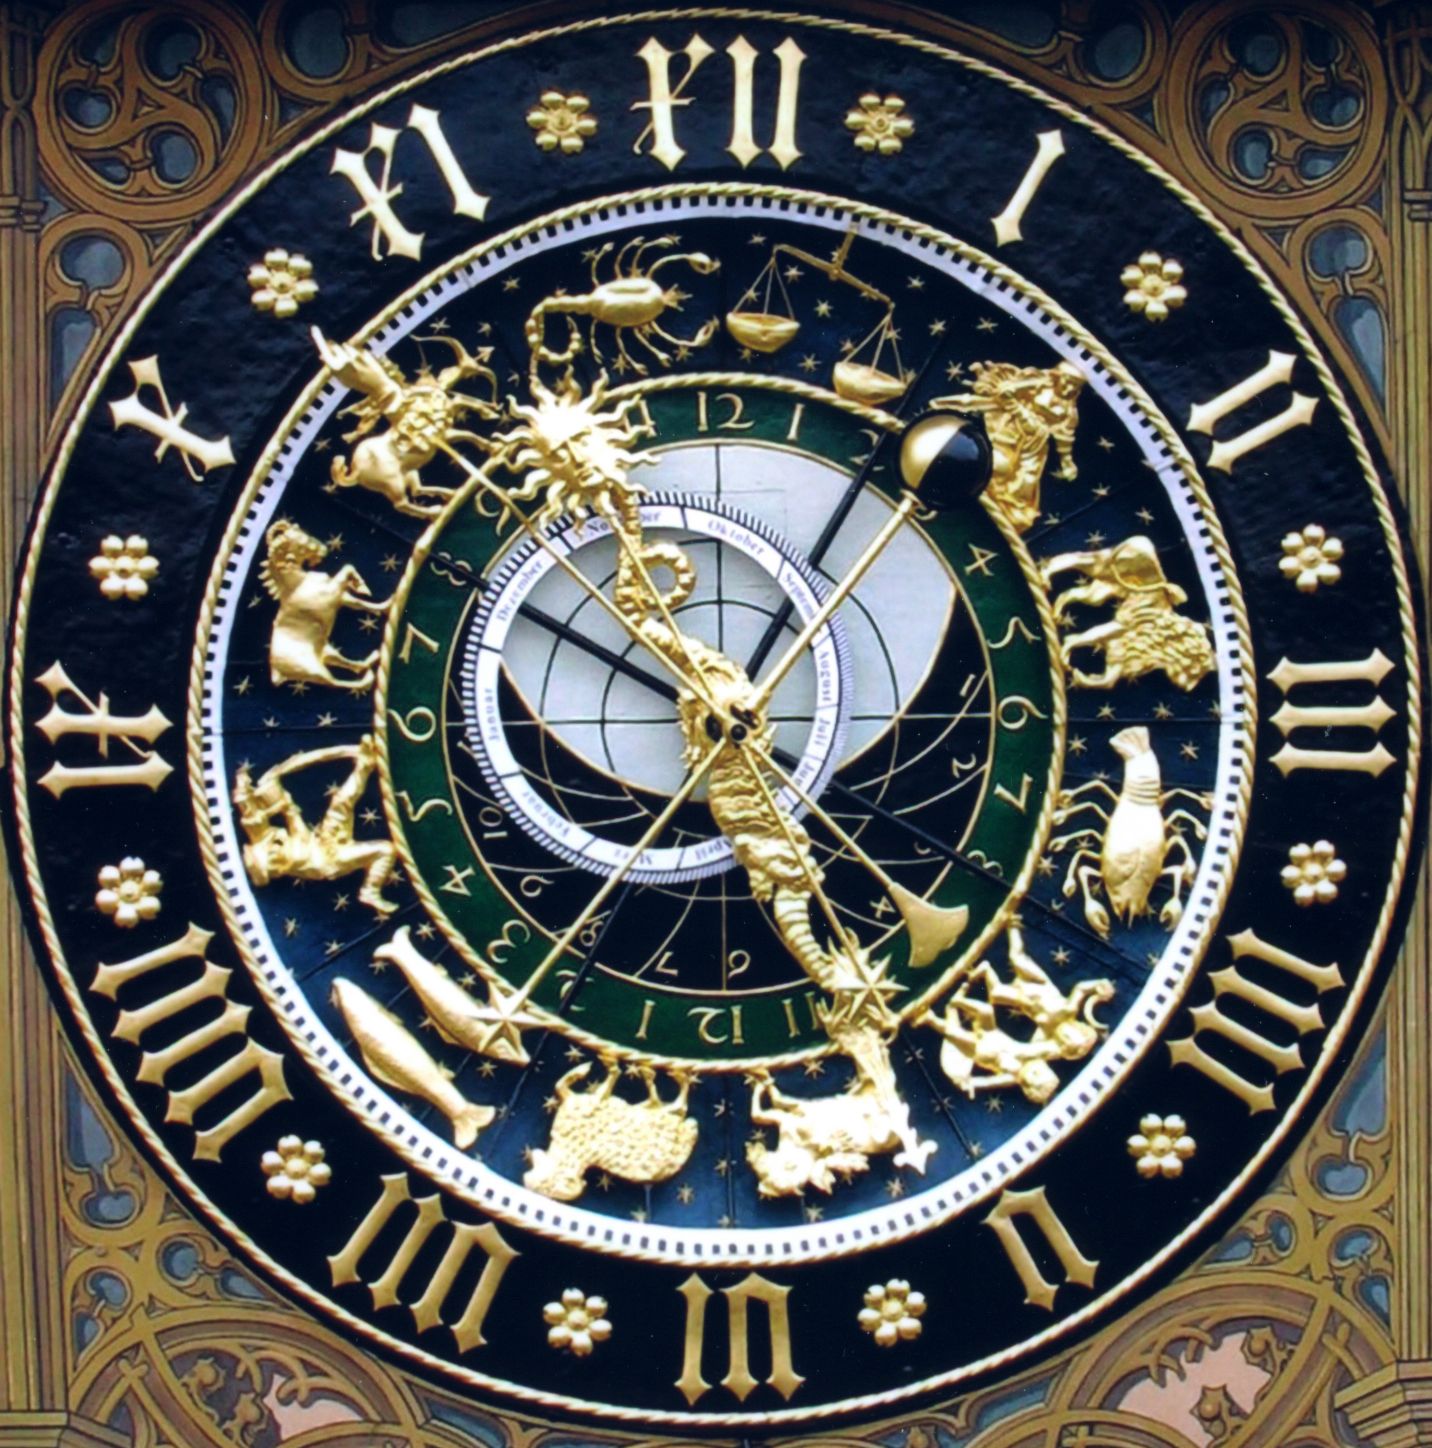 Die Astronomische Uhr am Ulmer Rathaus